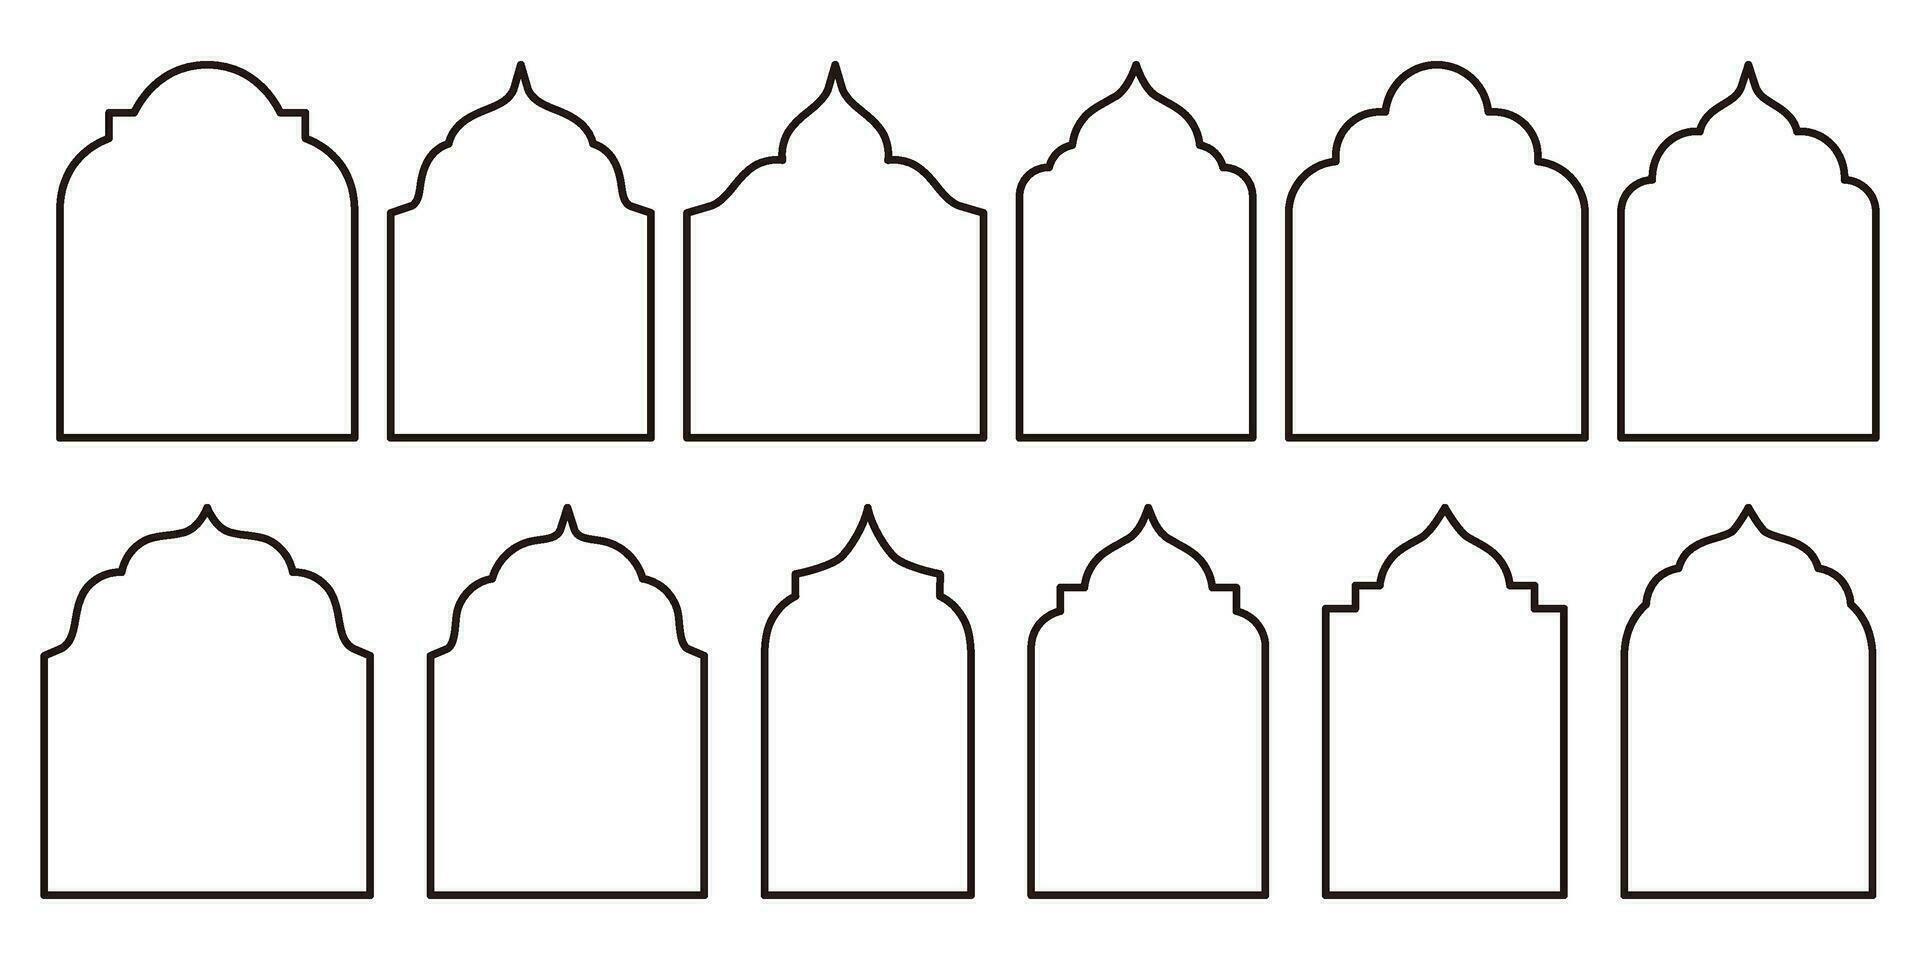 coleção do oriental estilo islâmico Ramadã kareem e eid Mubarak janelas e arcos. moderno Projeto elementos incluir portas, mesquita cúpulas, e lanternas dentro esboço estilo. vetor